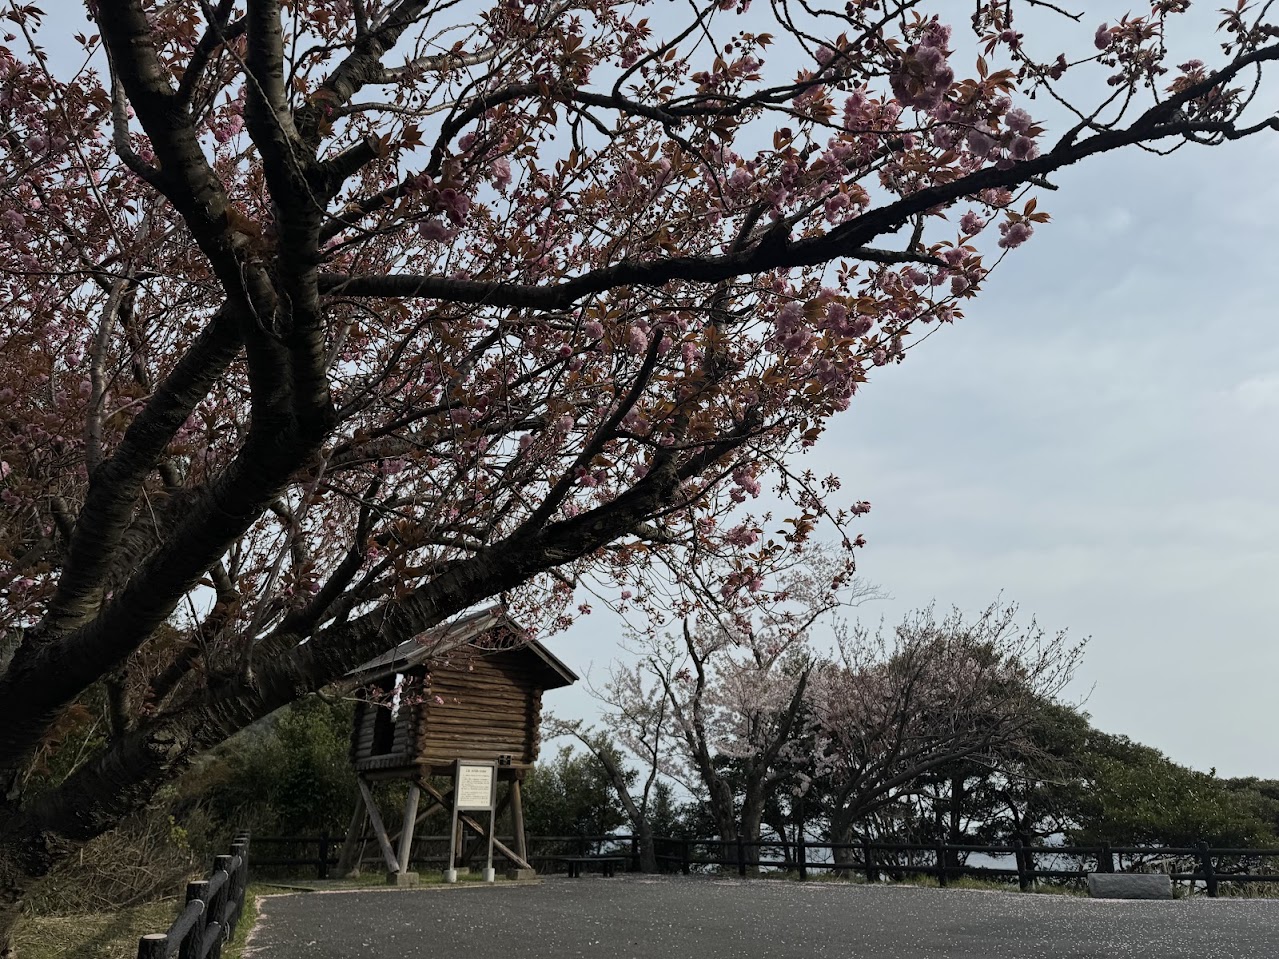 魚見台駐車場入り口にある八重桜が咲き始めました